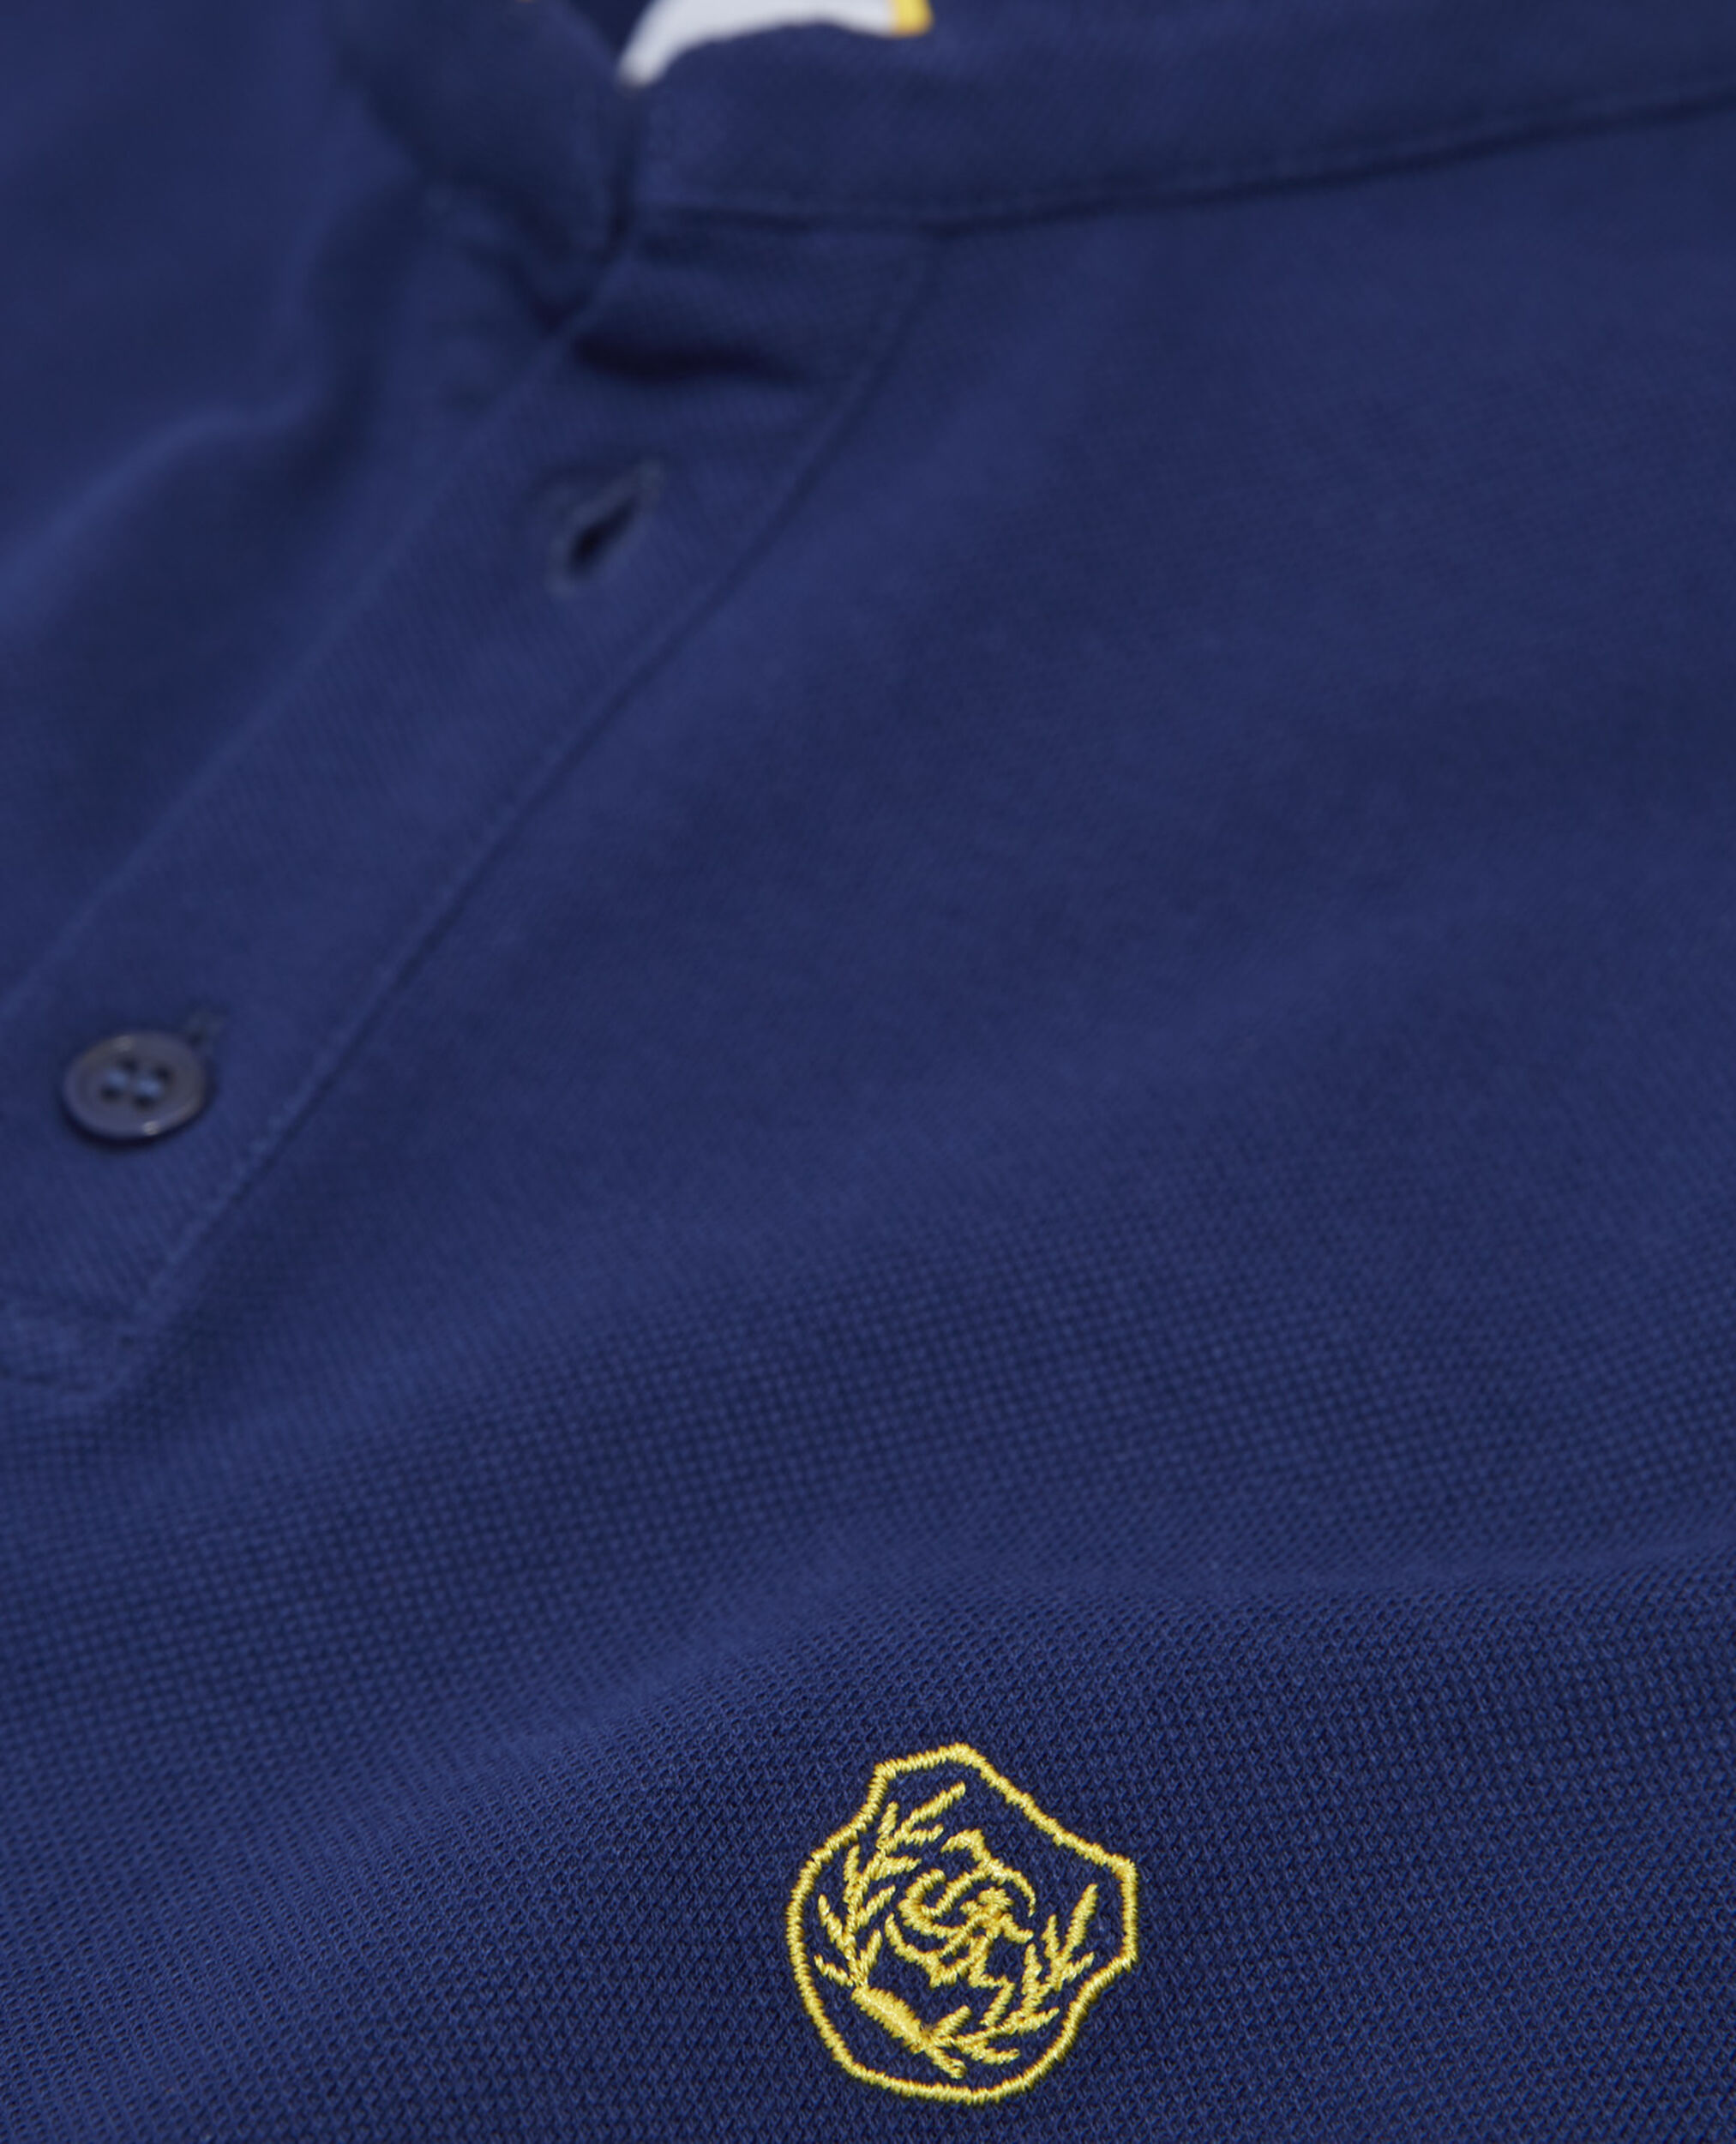 Polo jersey bleu marine détails jaune, OFFICER NVY/DANDELION YLW, hi-res image number null